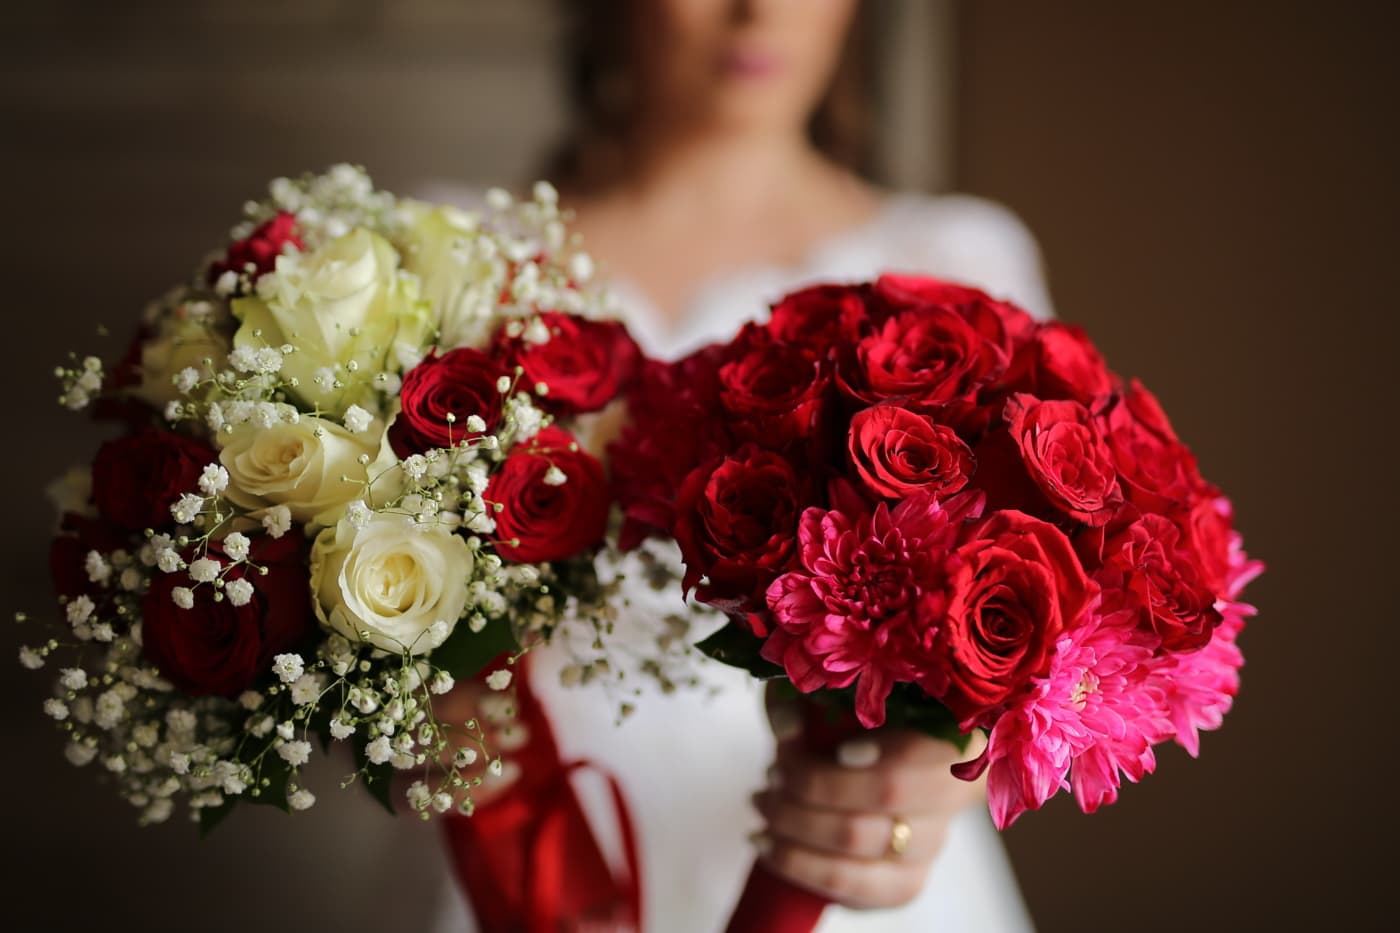 Hochzeit, Hochzeitsstrauß, Rosen, rot, Blumenstrauß, Braut, Romantik, Liebe, Blume, stieg